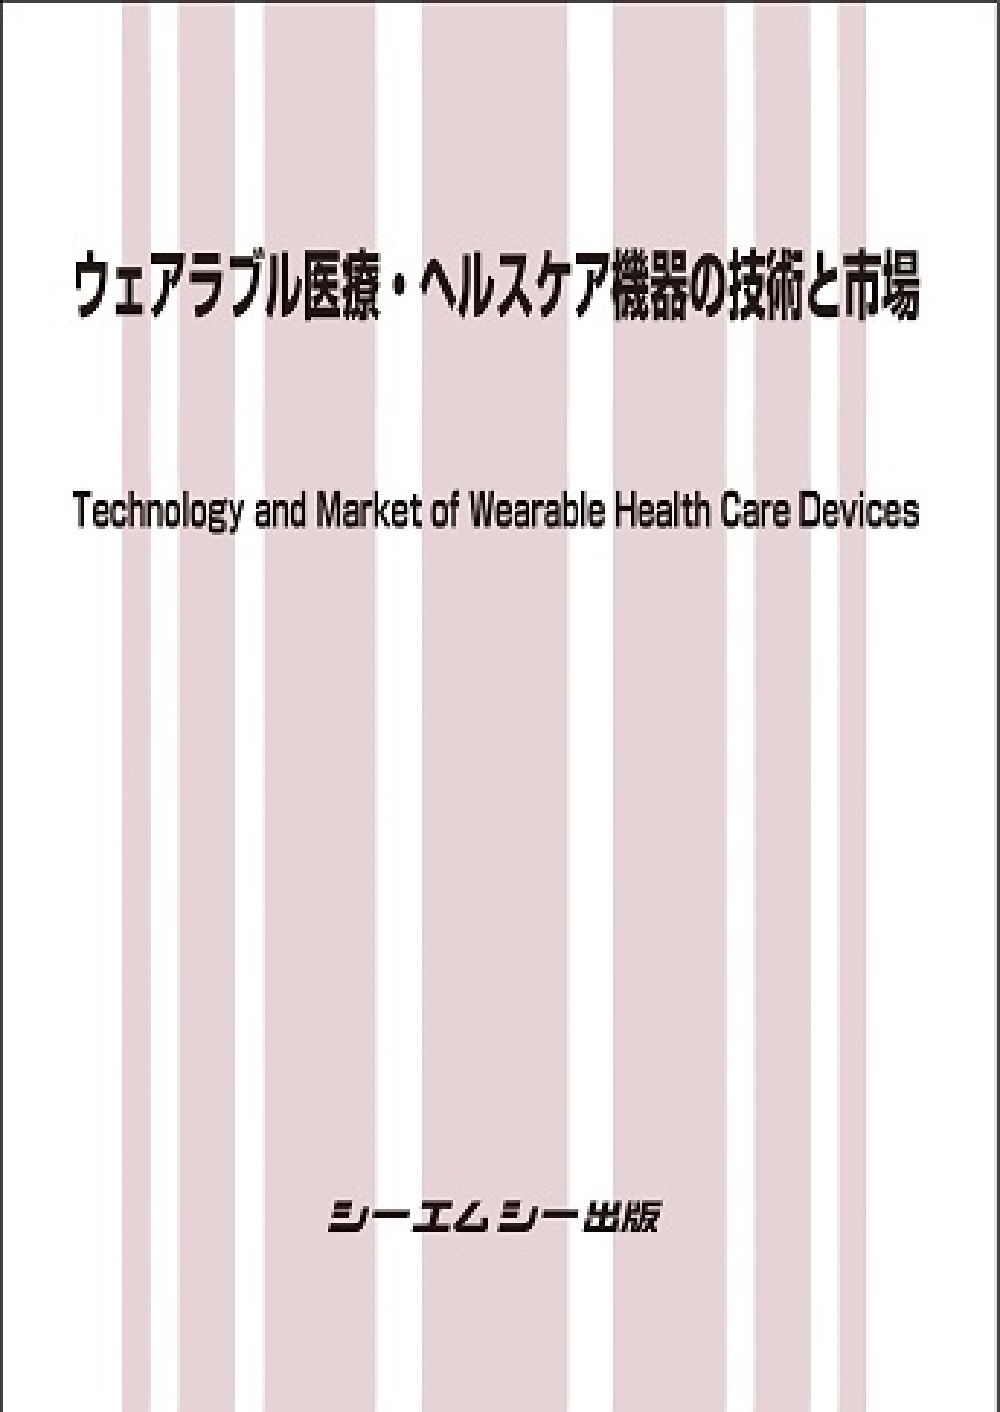 ウェアラブル医療・ヘルスケア機器の技術と市場の商品画像